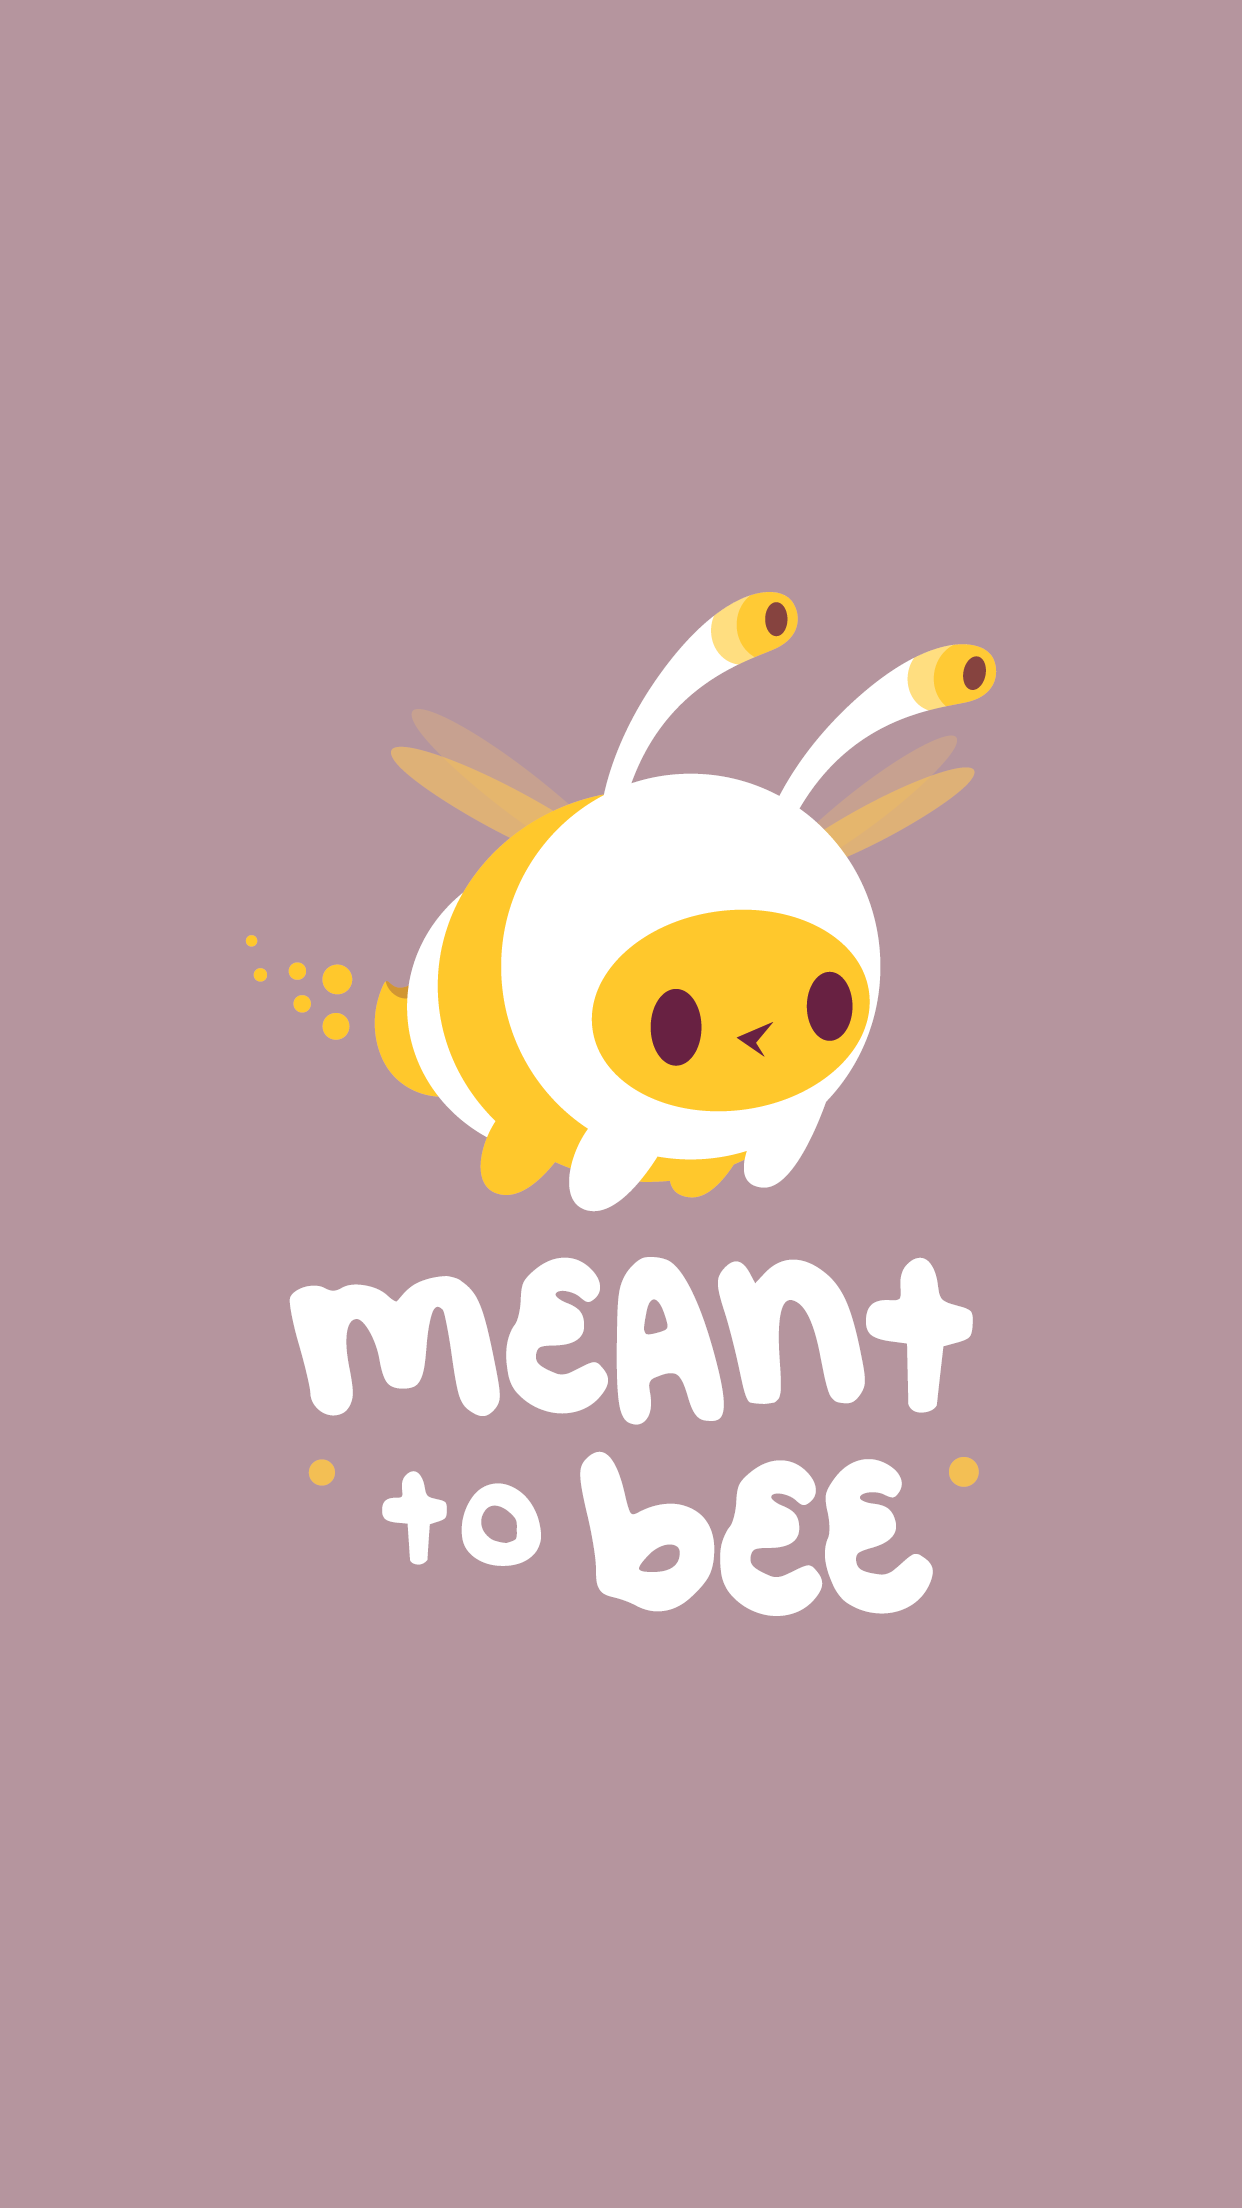 Screenshot 1 of Mean to Bee (Chưa phát hành) 1.1